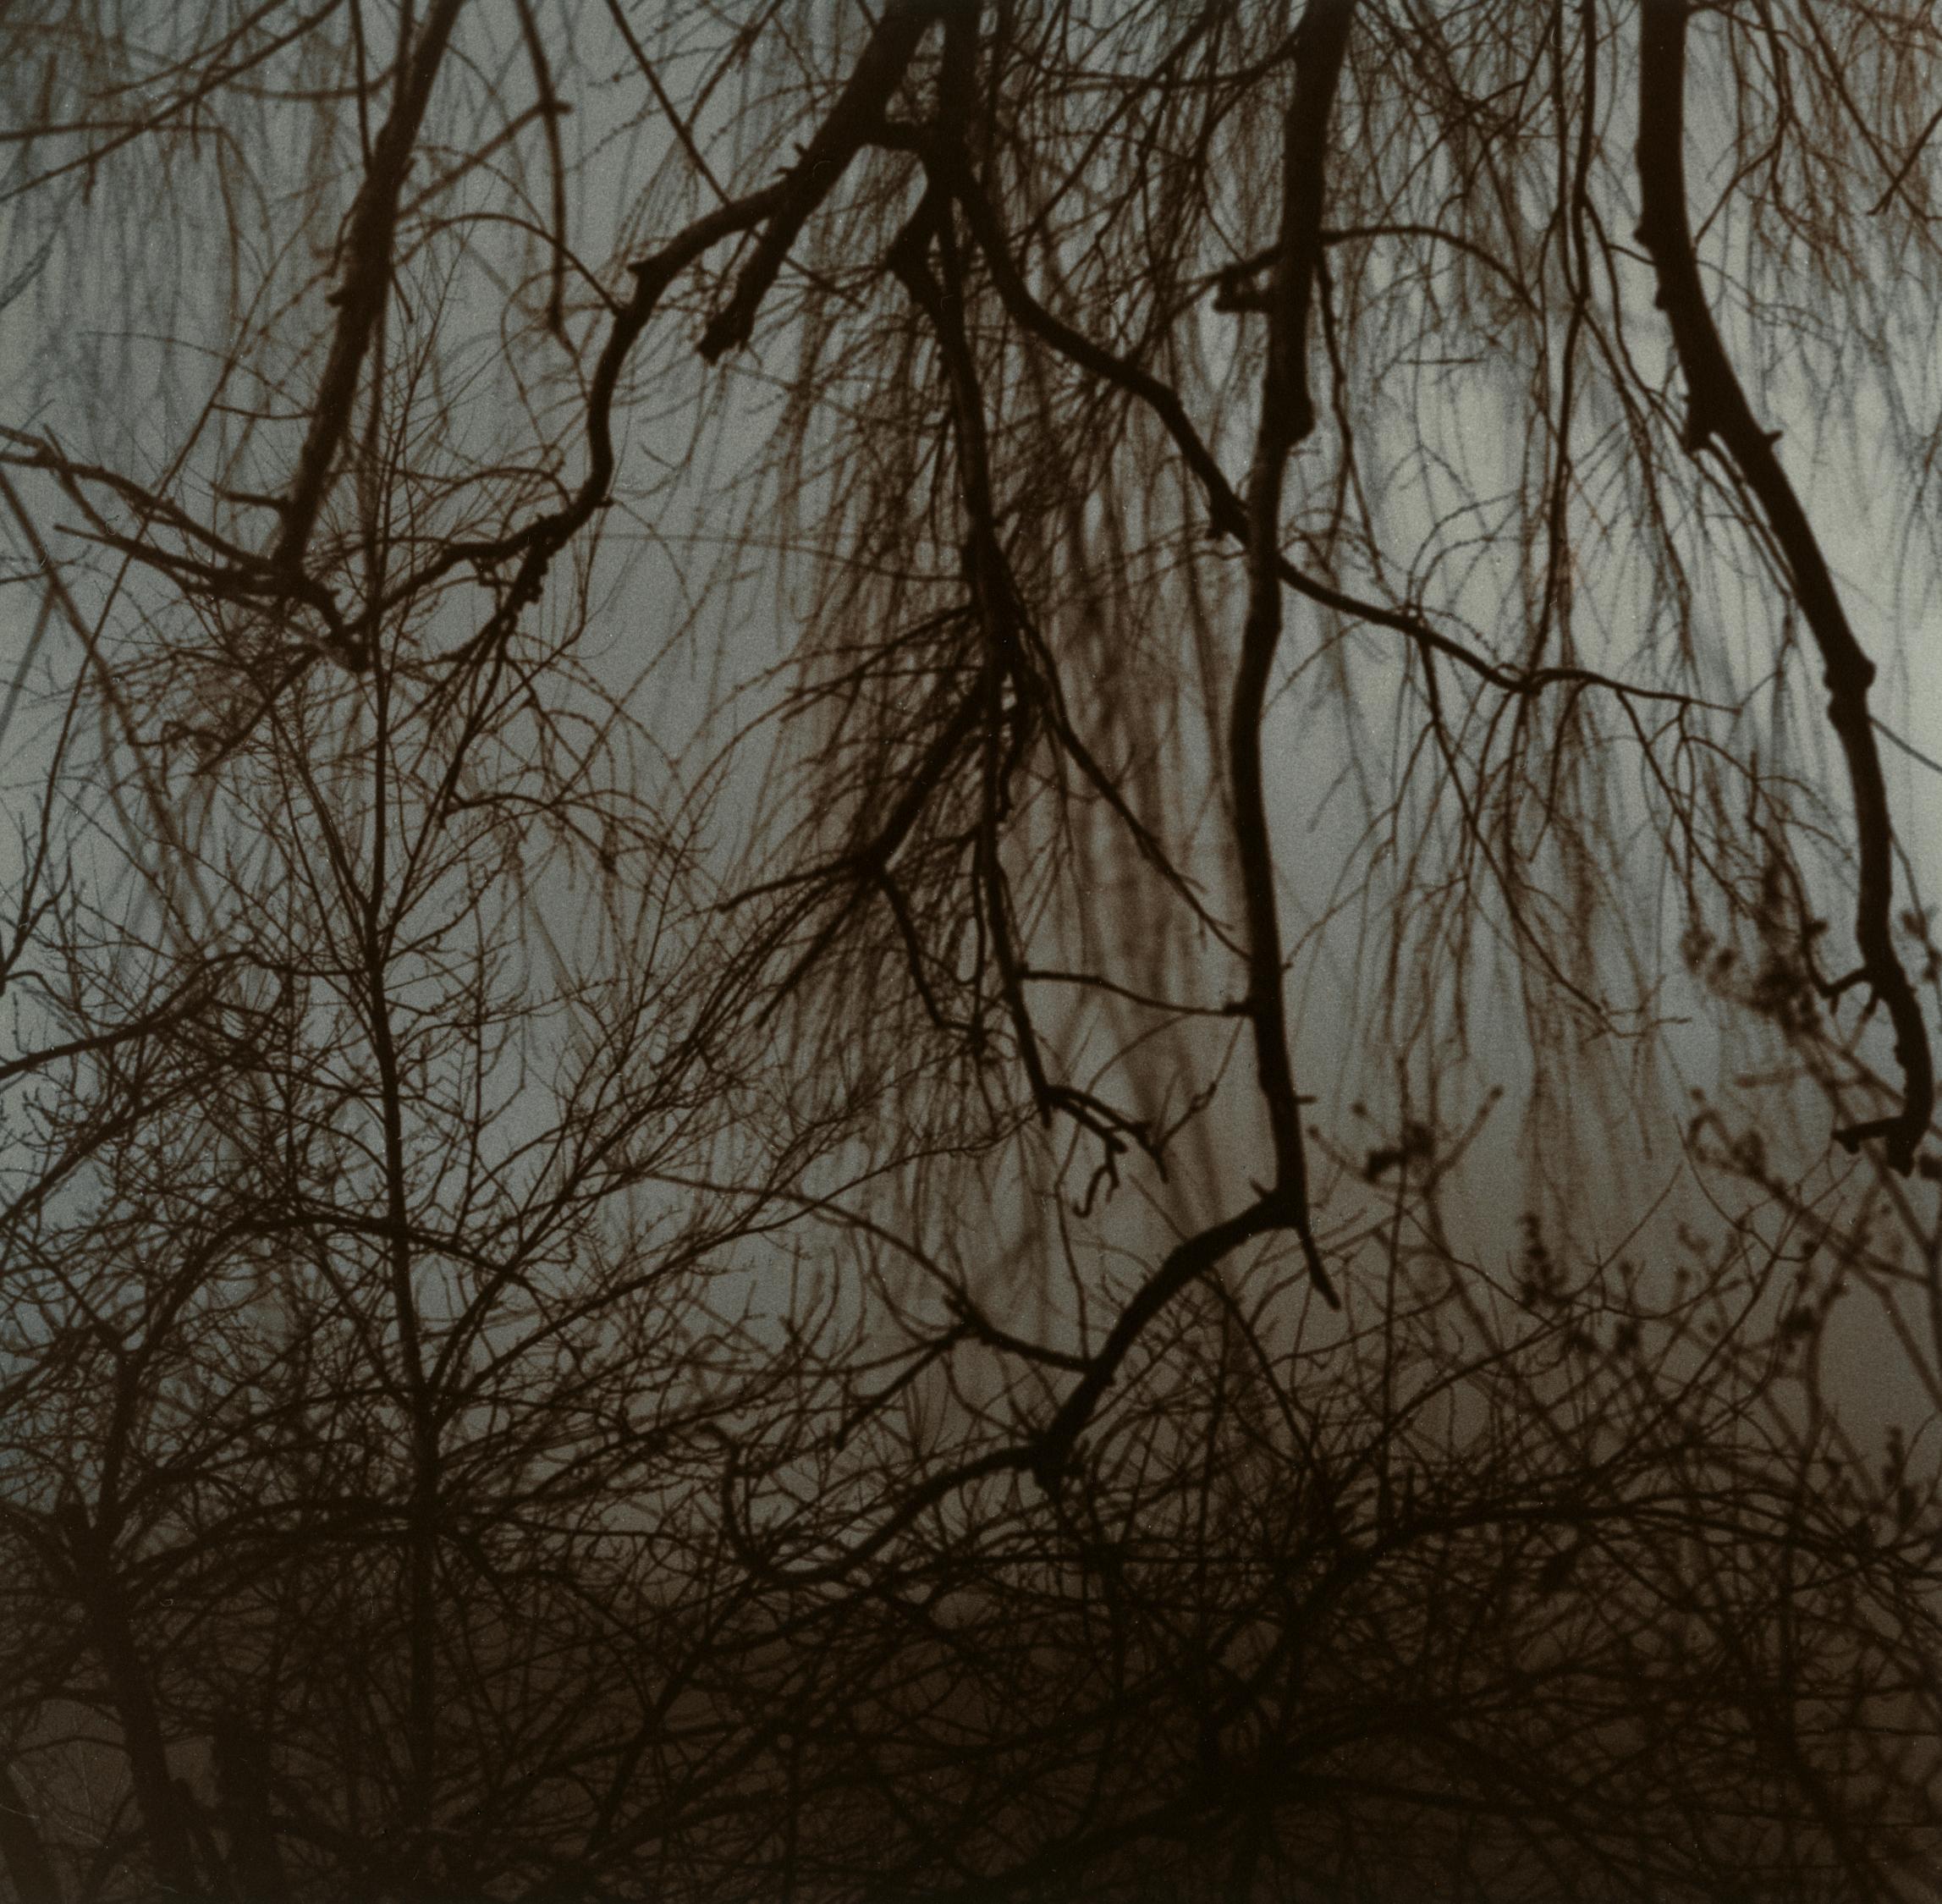 Entanglement #2 – zeitgenössische Schwarz-Weiß-Film-Landschaftsfotografie 